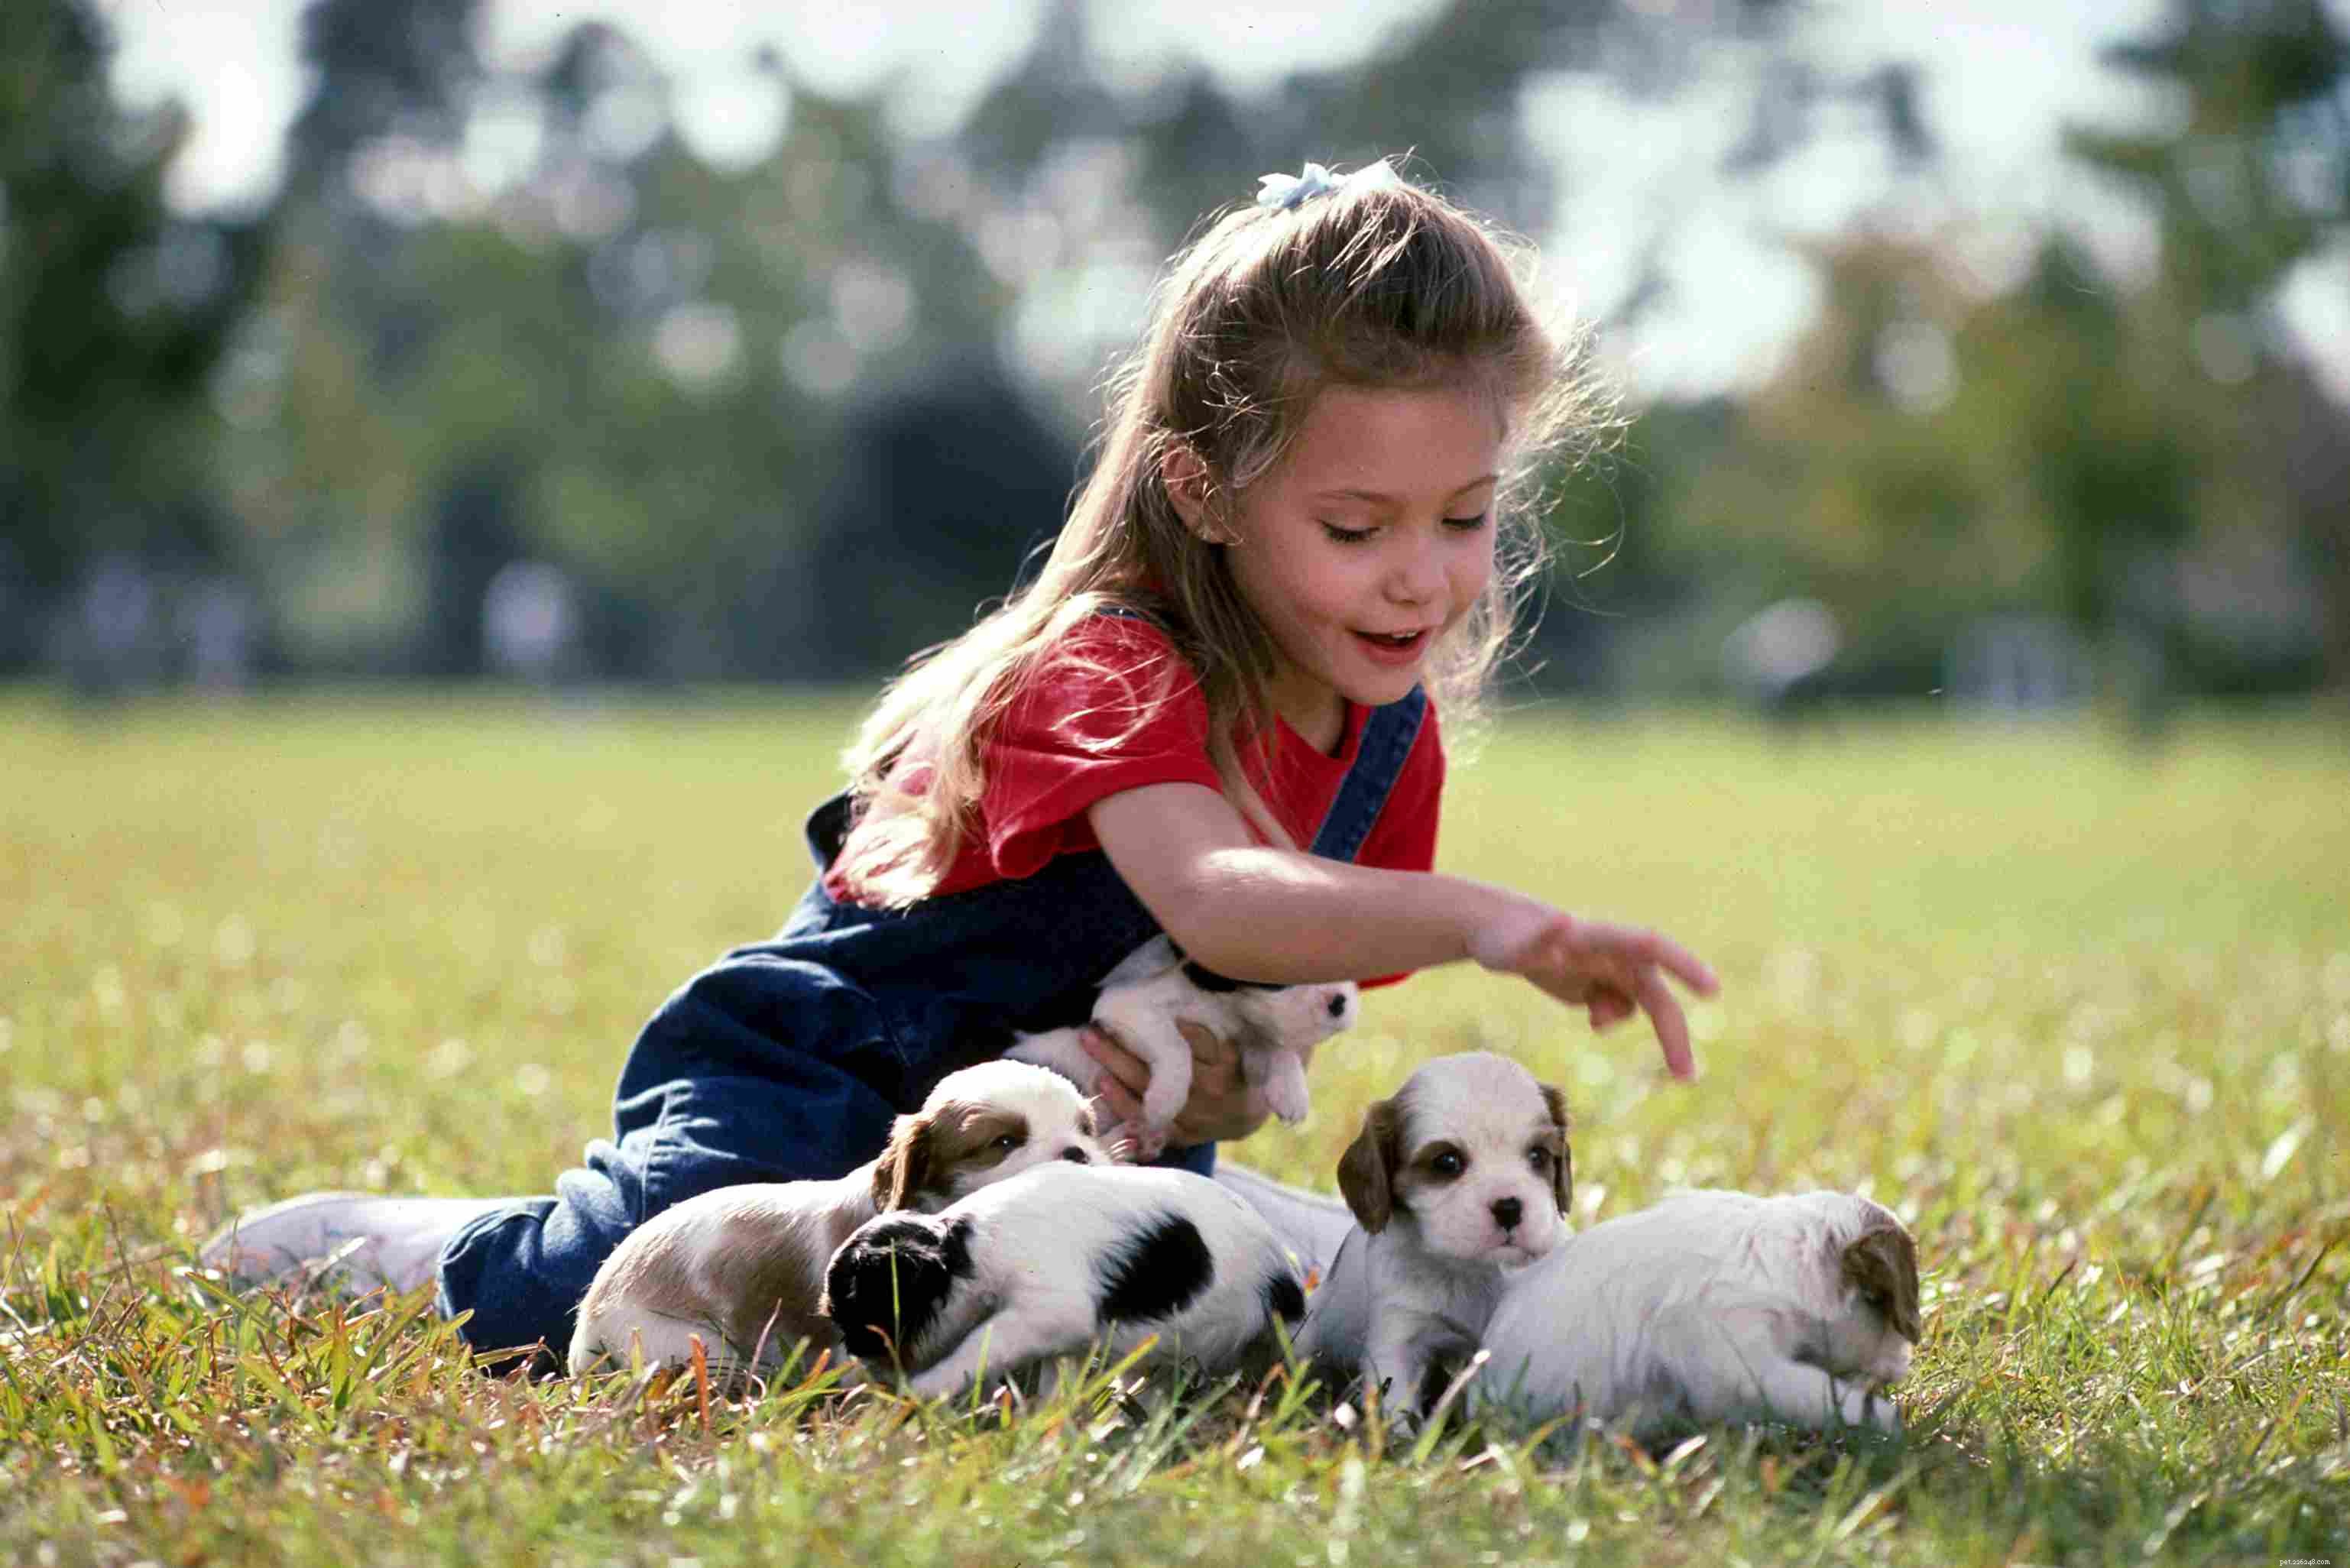 犬を子供から守るためのトップ10のヒント 